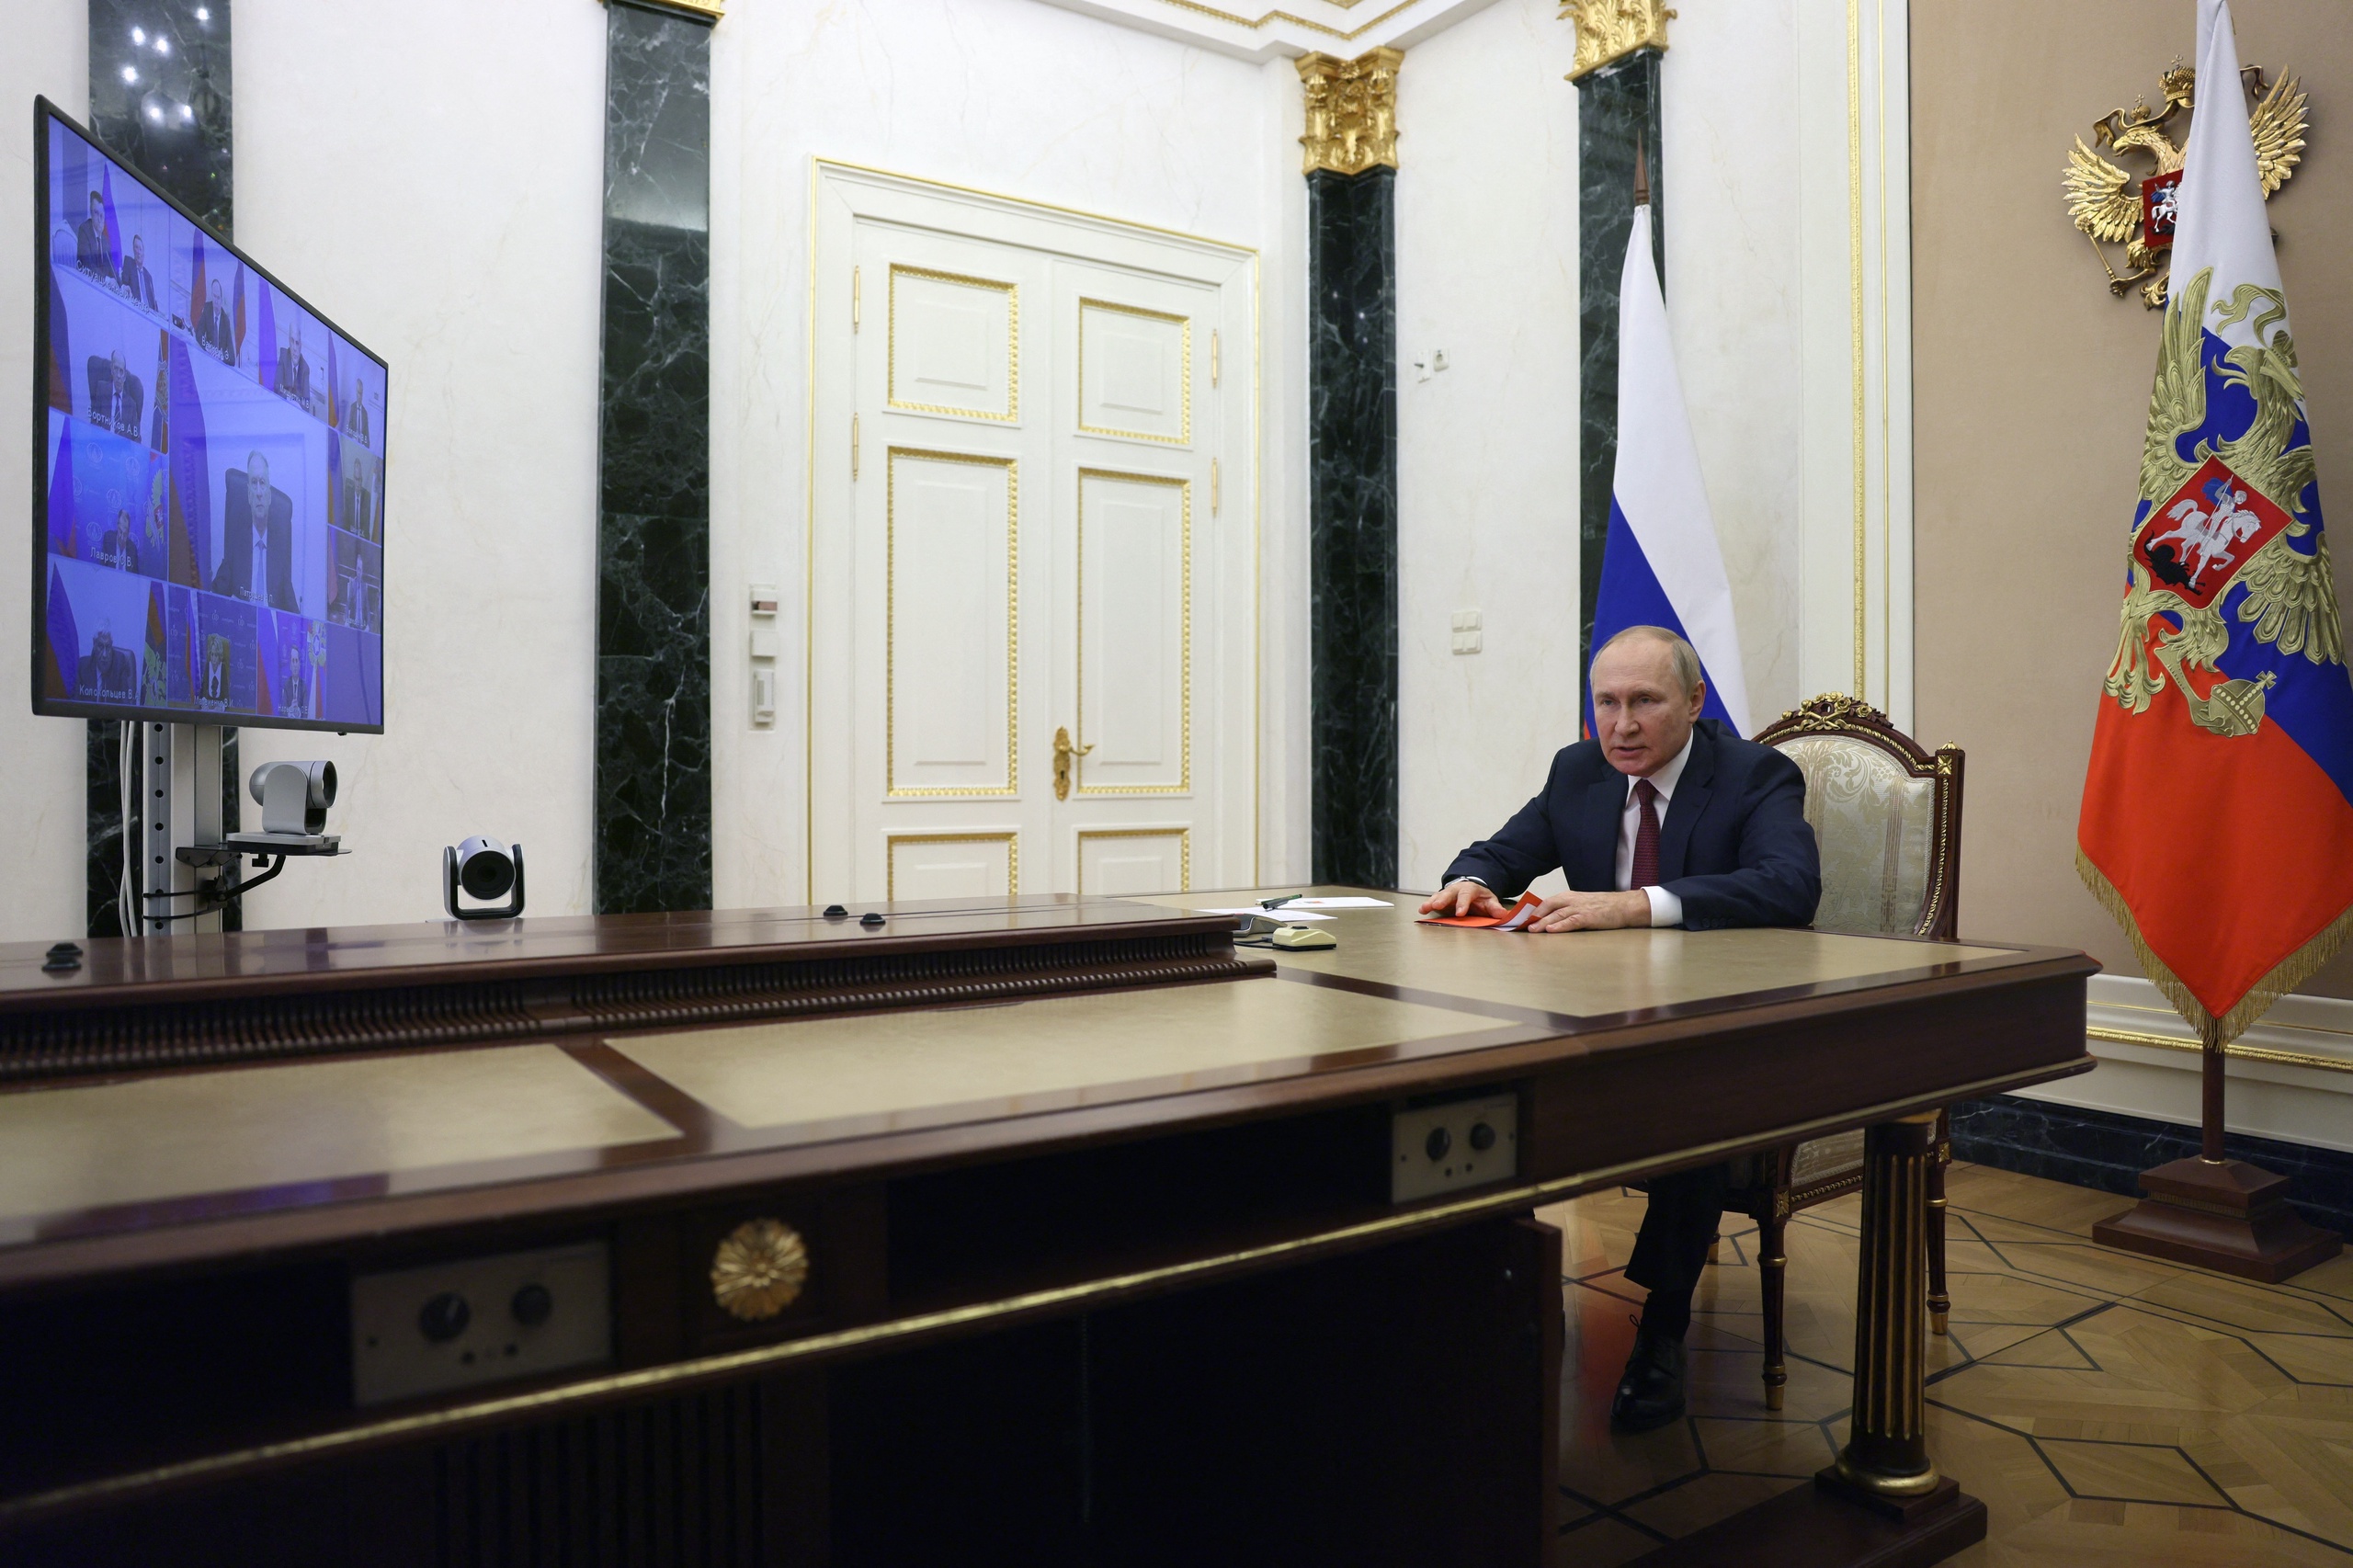 Vladimir Poetin zal vandaag in een toespraak de annexatie van bezette gebieden in Oekraïne aankondigen.